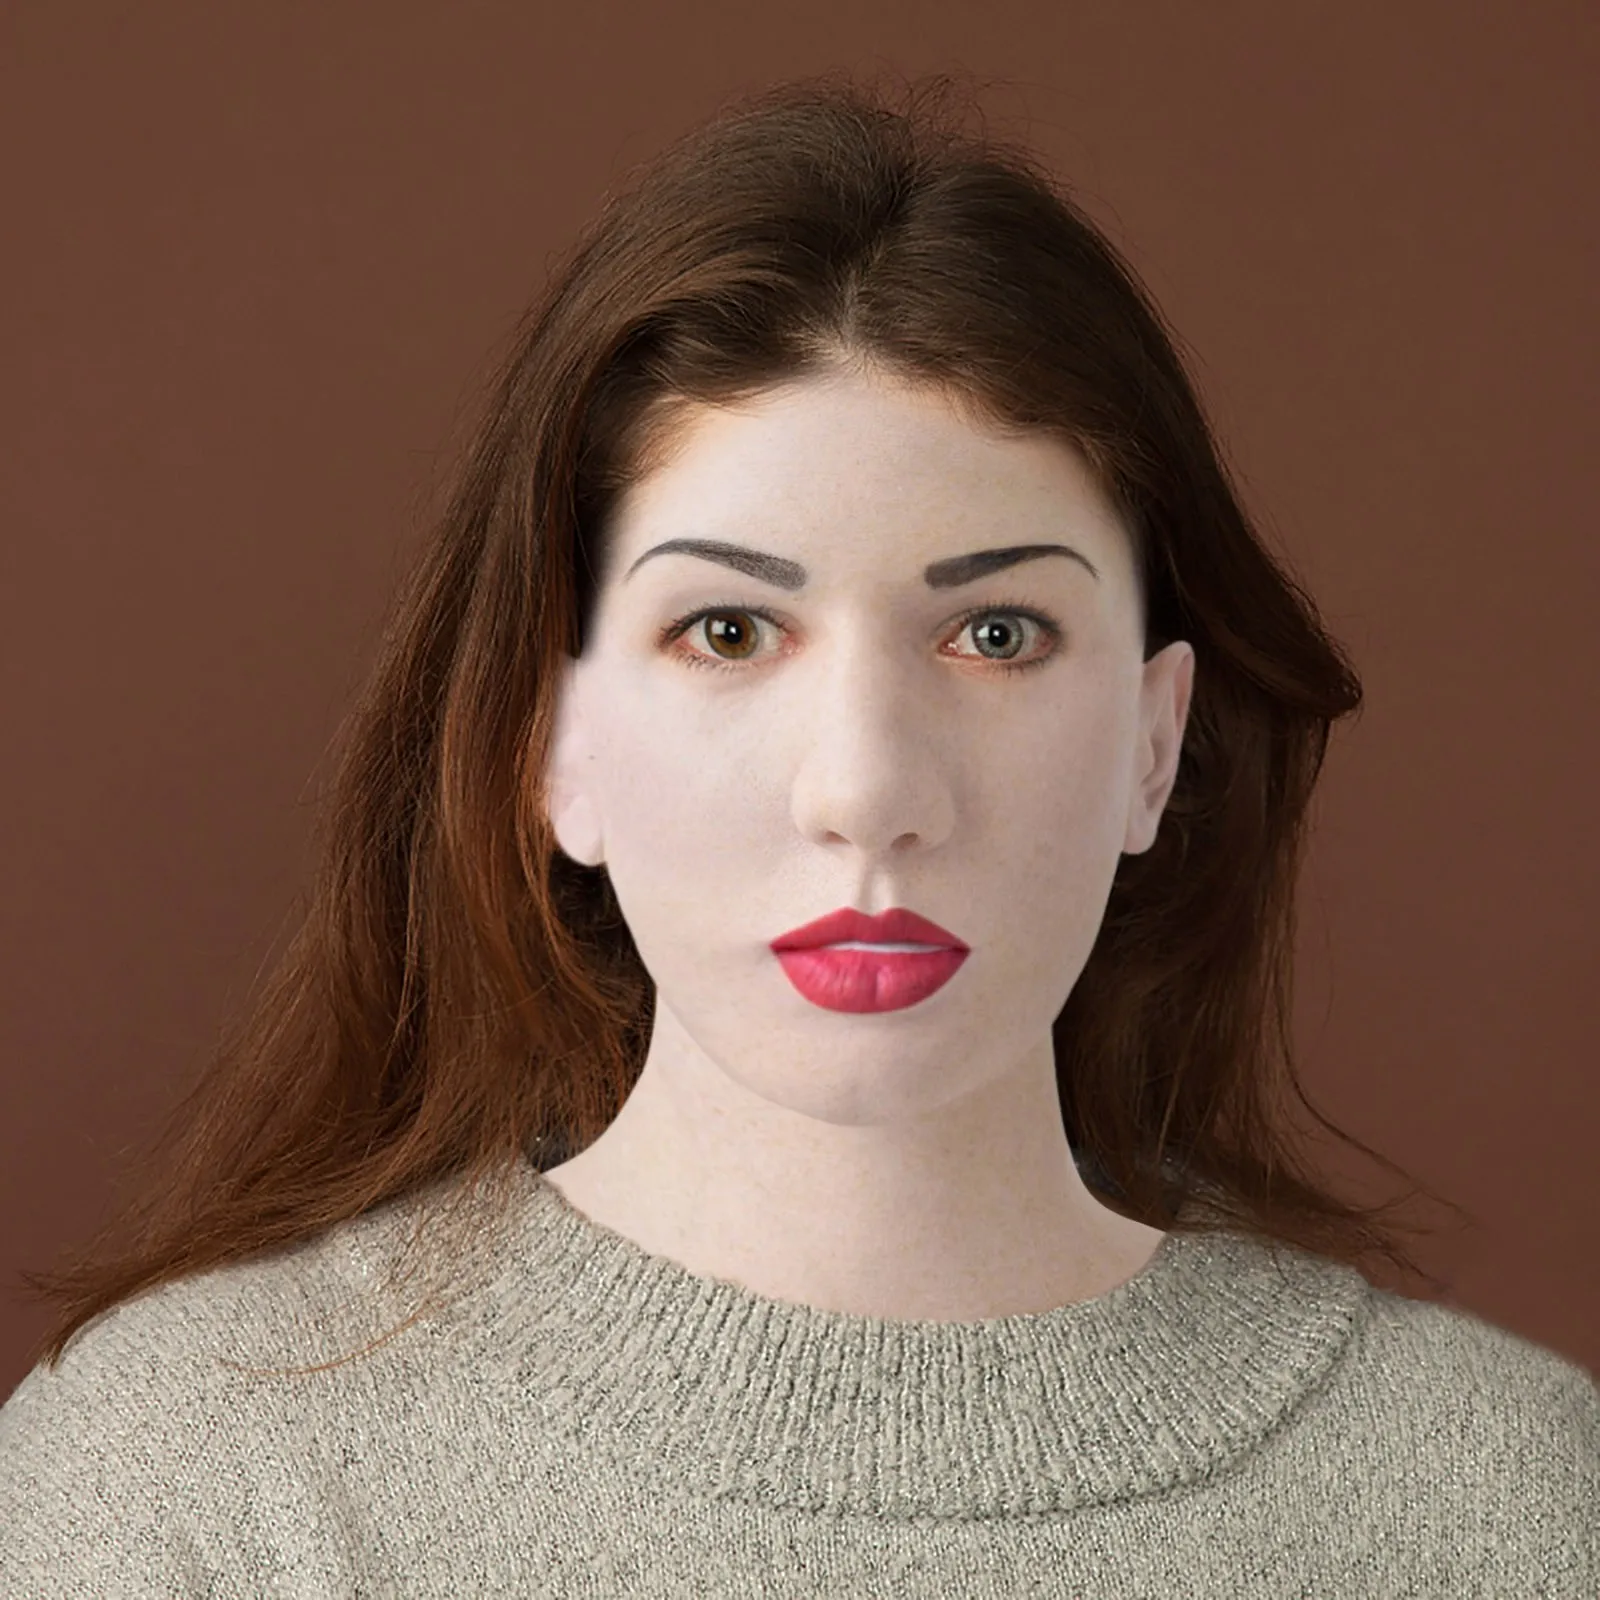 Реалистичная женская маска для косплея на Хэллоуин забавная реквизит вечеринки